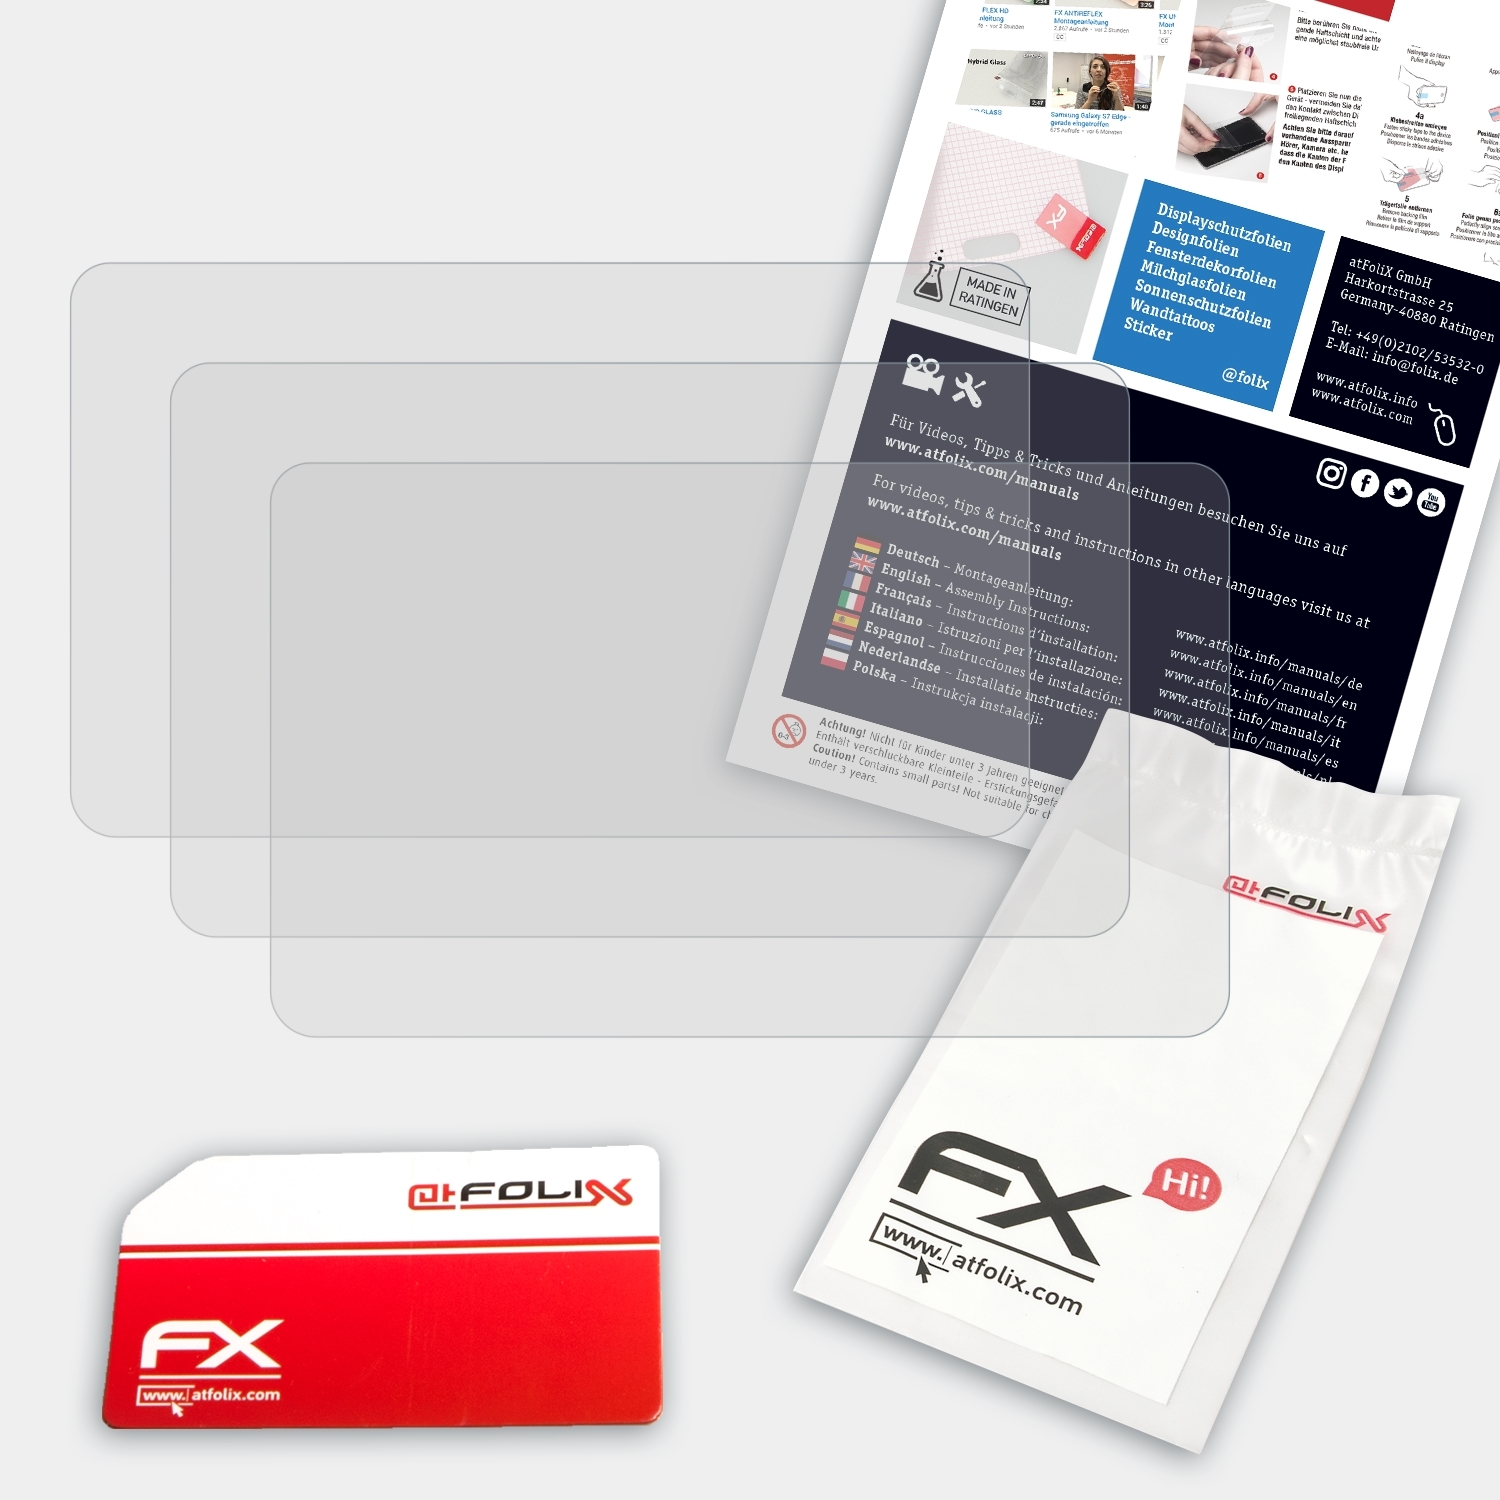 FX-Antireflex Displayschutz(für NEX-5R) 3x ATFOLIX Sony